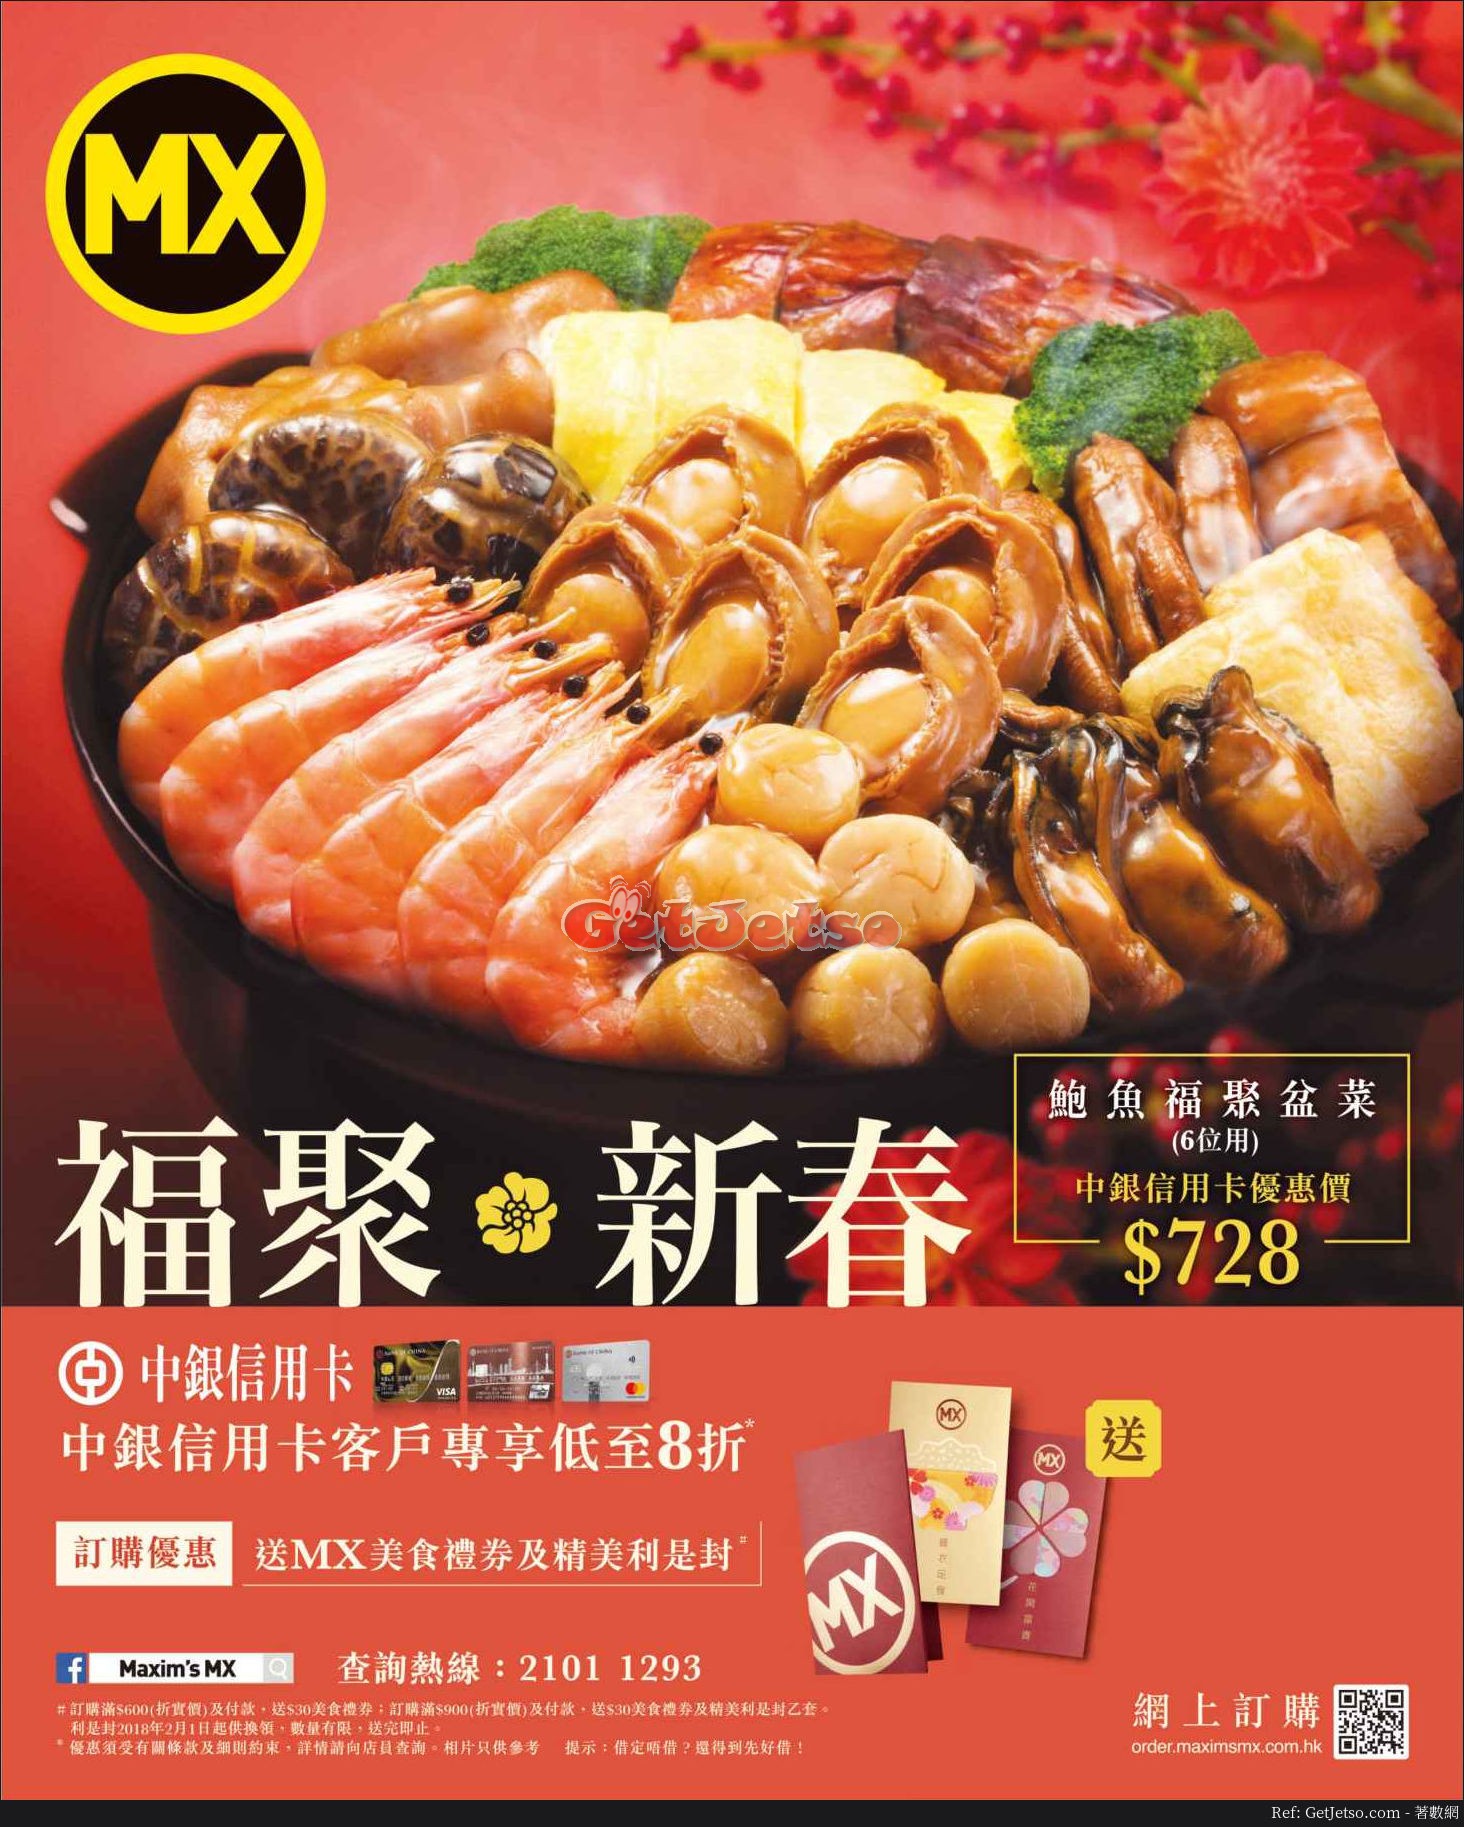 MX 美心新春盆菜低至8折優惠@中銀信用卡(至18年2月27日)圖片1